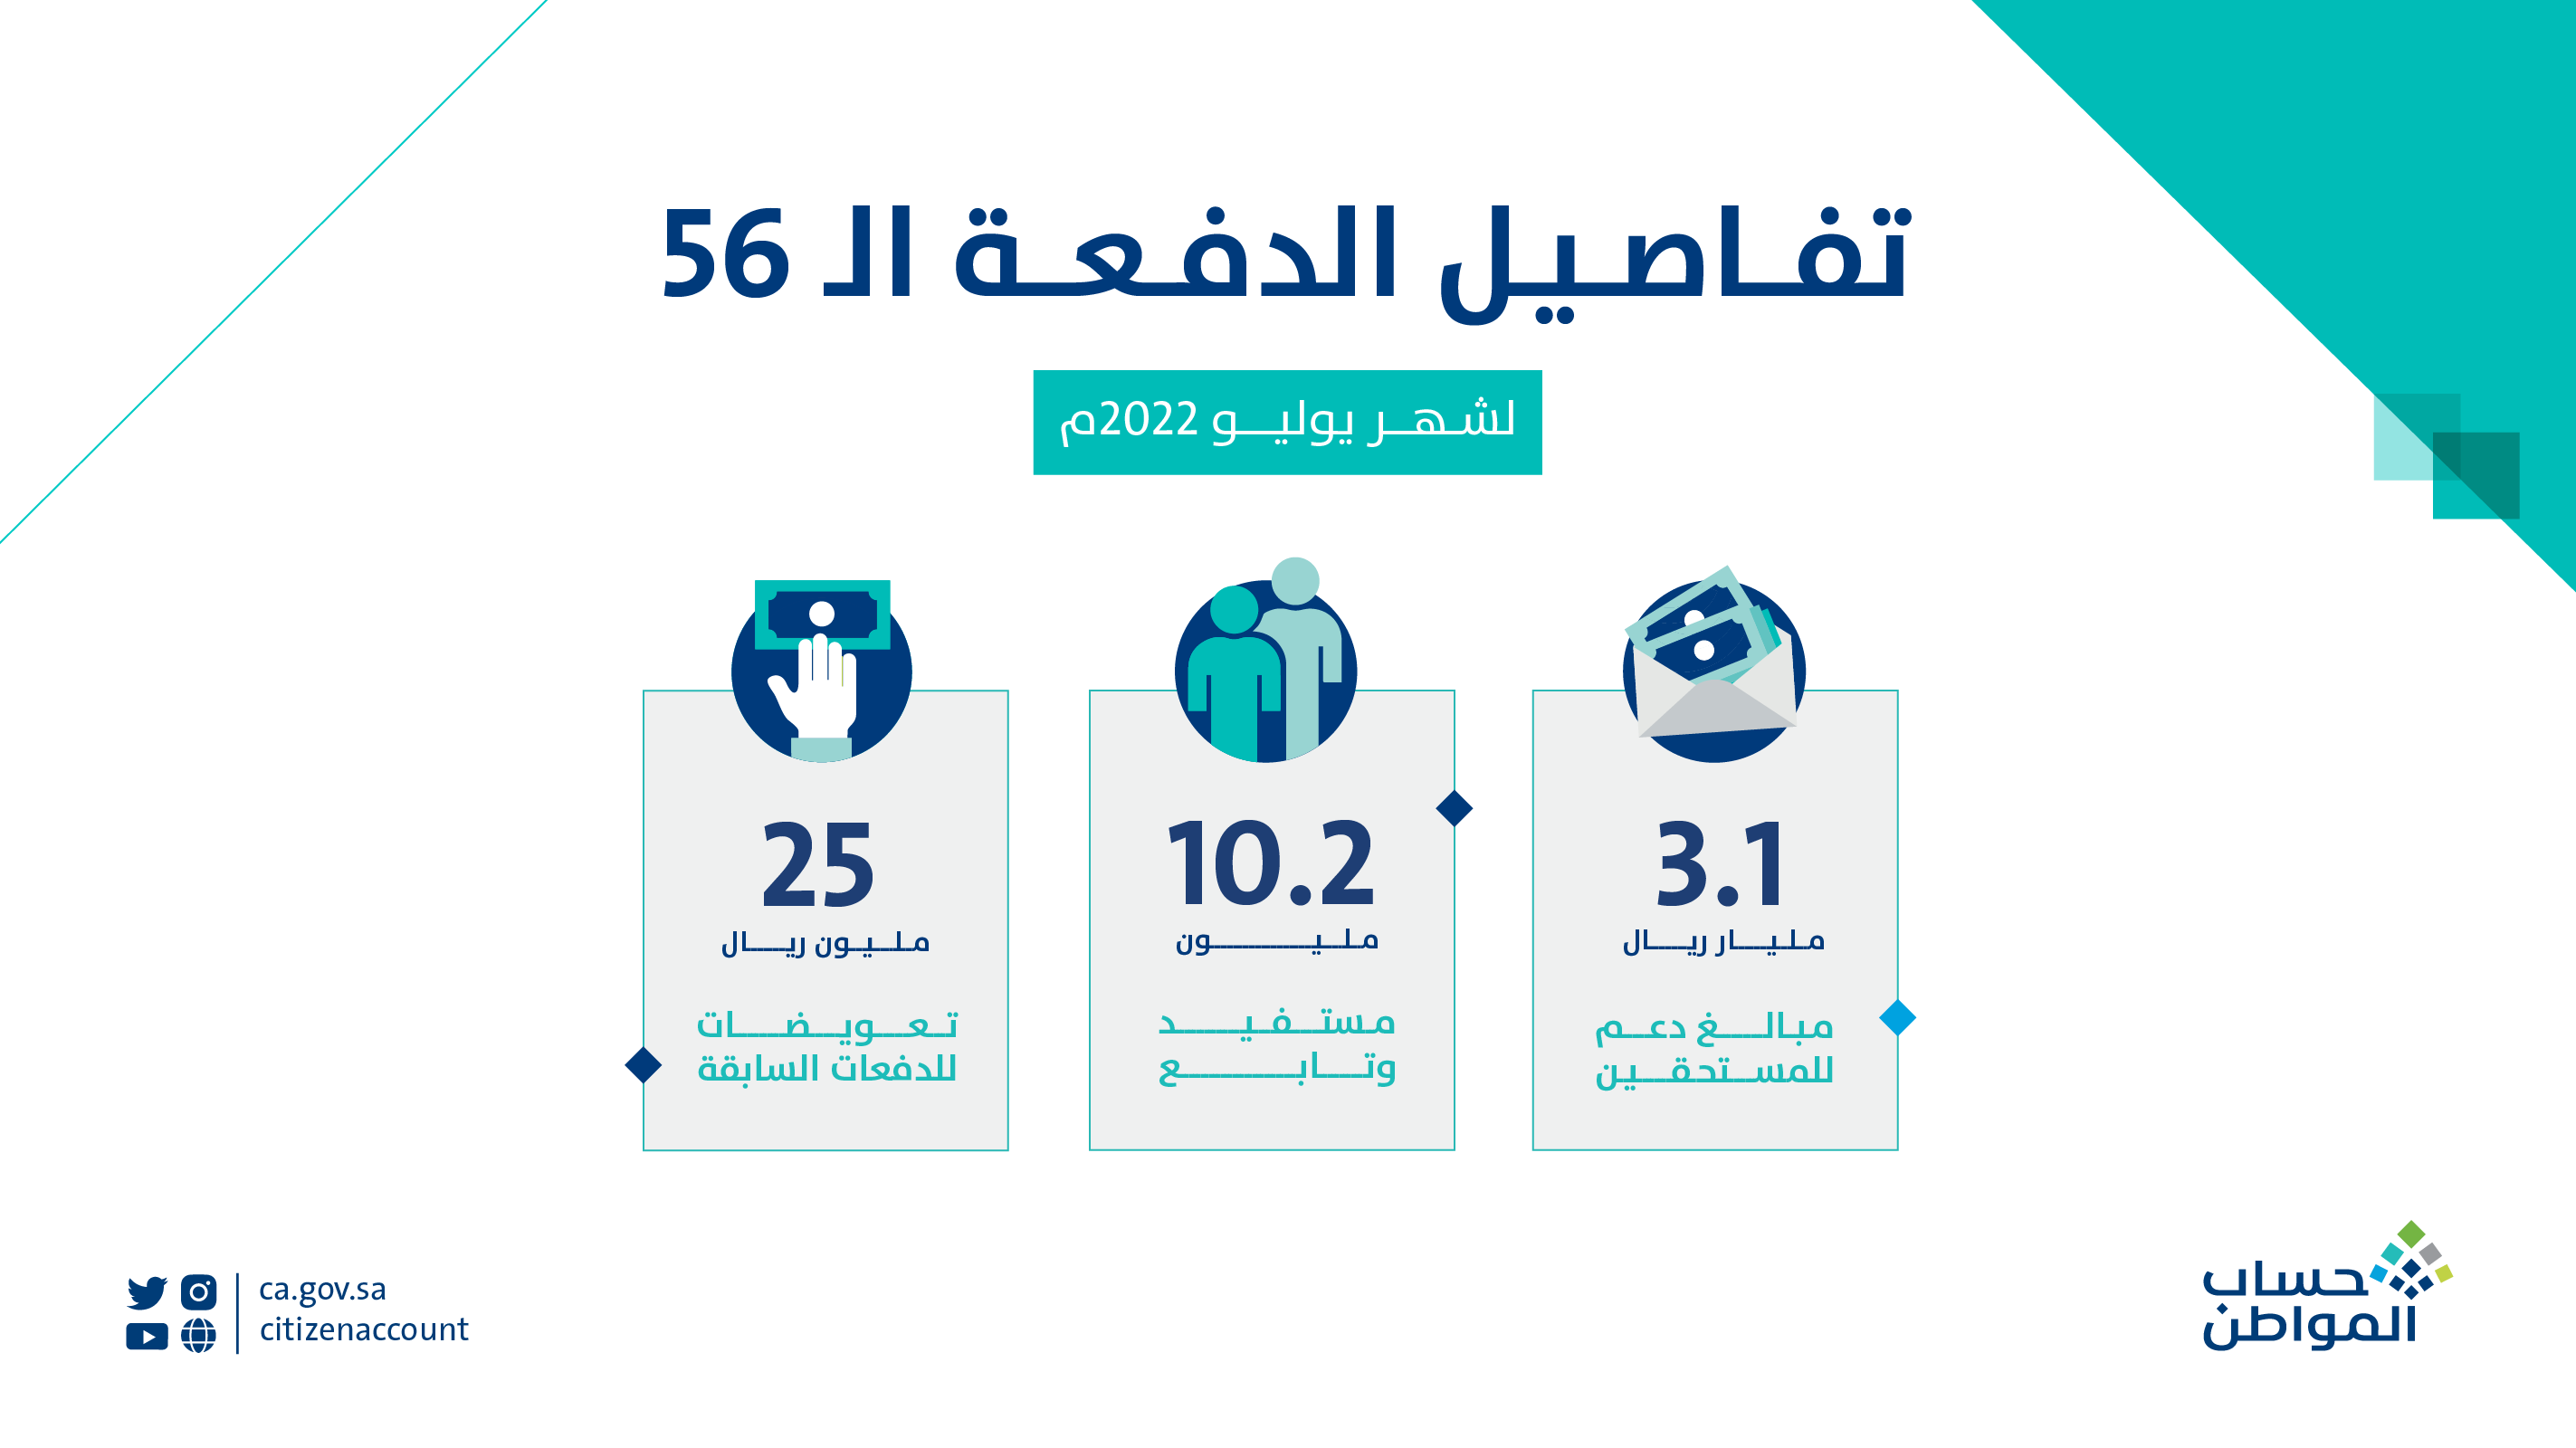 موعد صرف حساب المواطن الدفعة 56 لشهر يوليو 2022 للمستحقين في السعودية